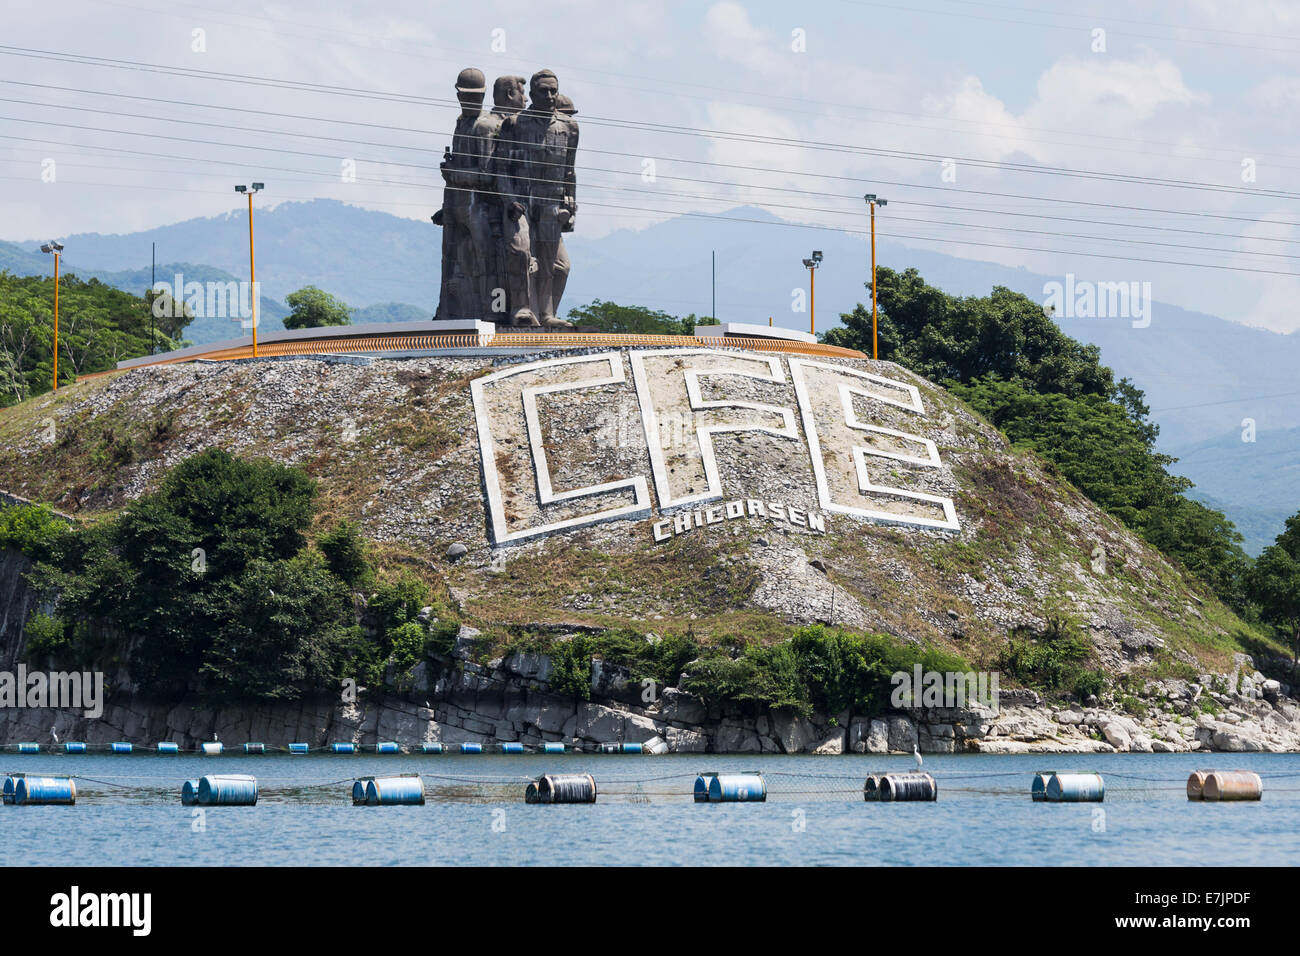 Statuen und CFE unterzeichnen am Chicoasen Damm in Chiapas, Mexiko Stockfoto